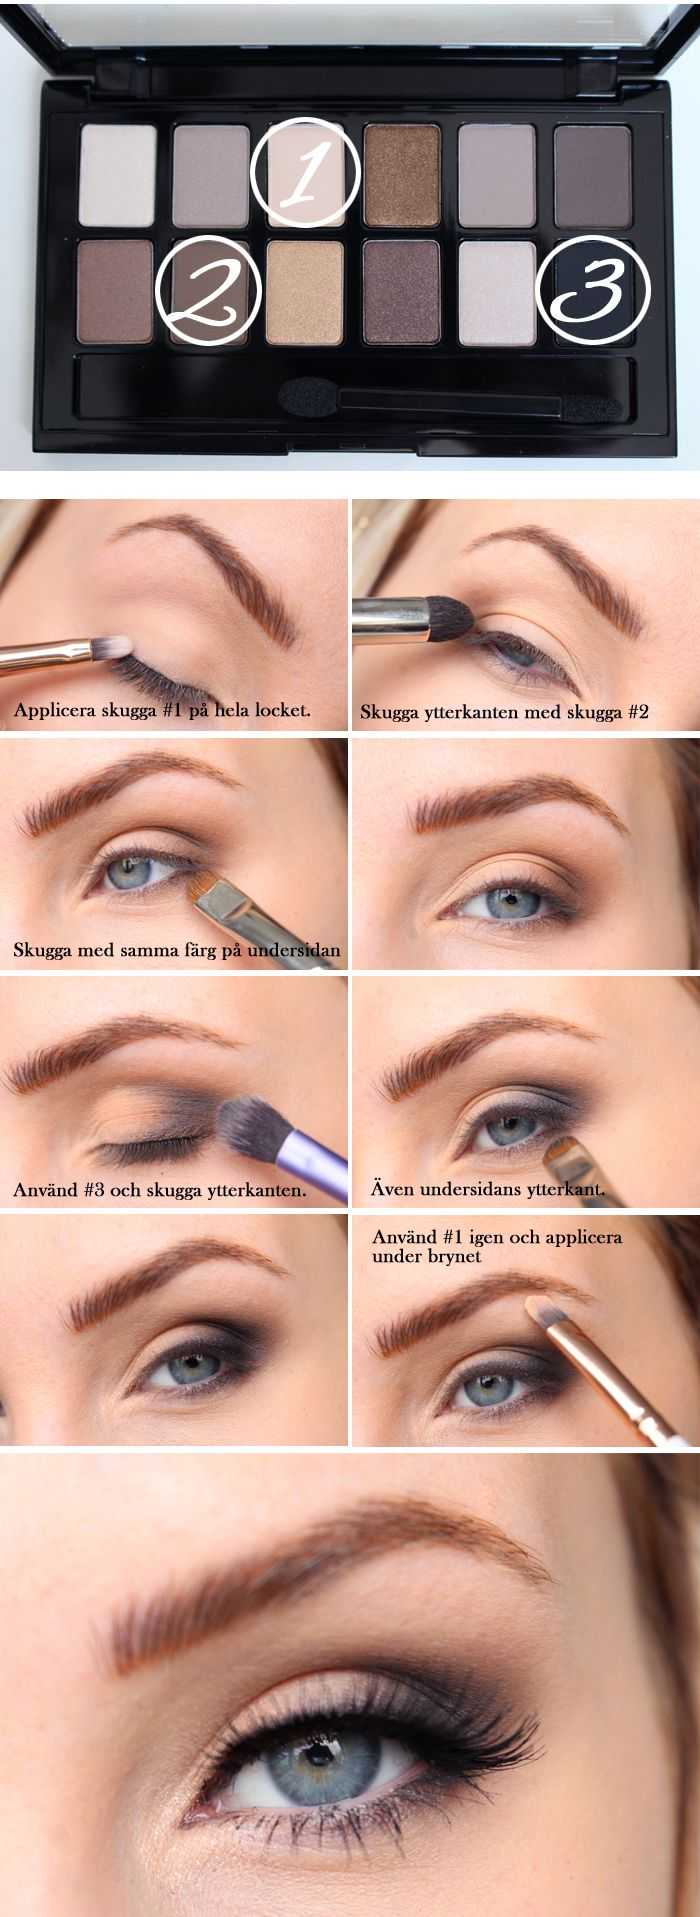 Инструкция, как делать макияж нюдовый для разных типов кожи, цвета глаз и волос